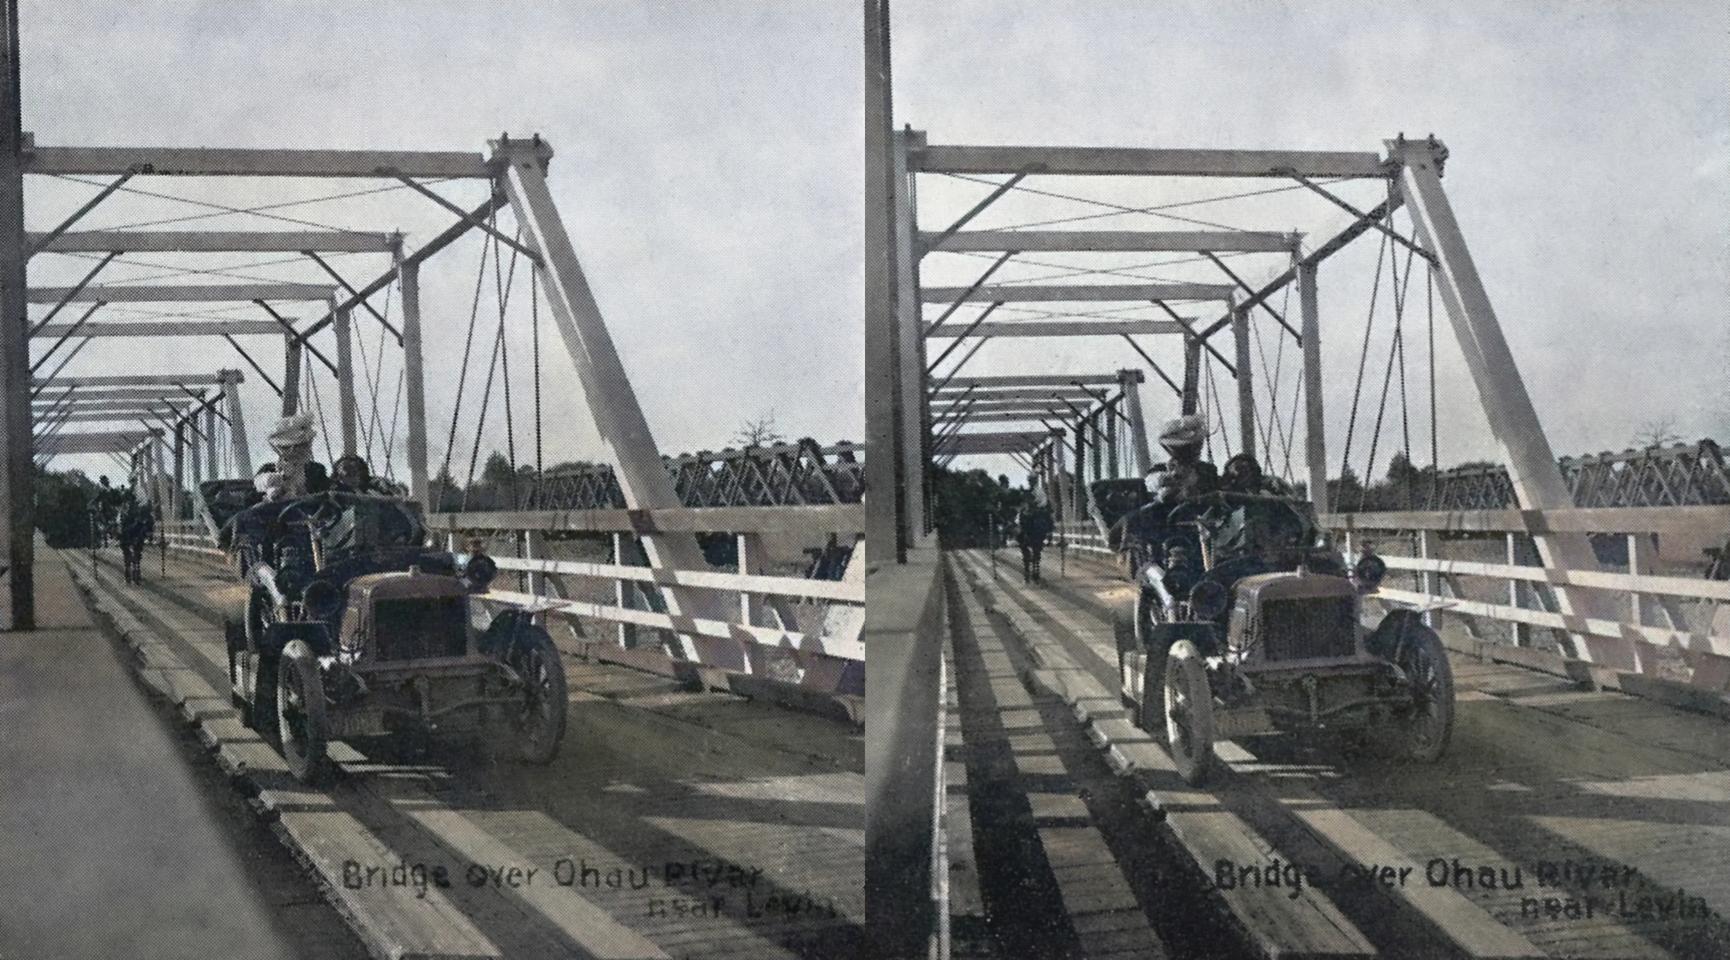 Bridge over Ohau River near Levin